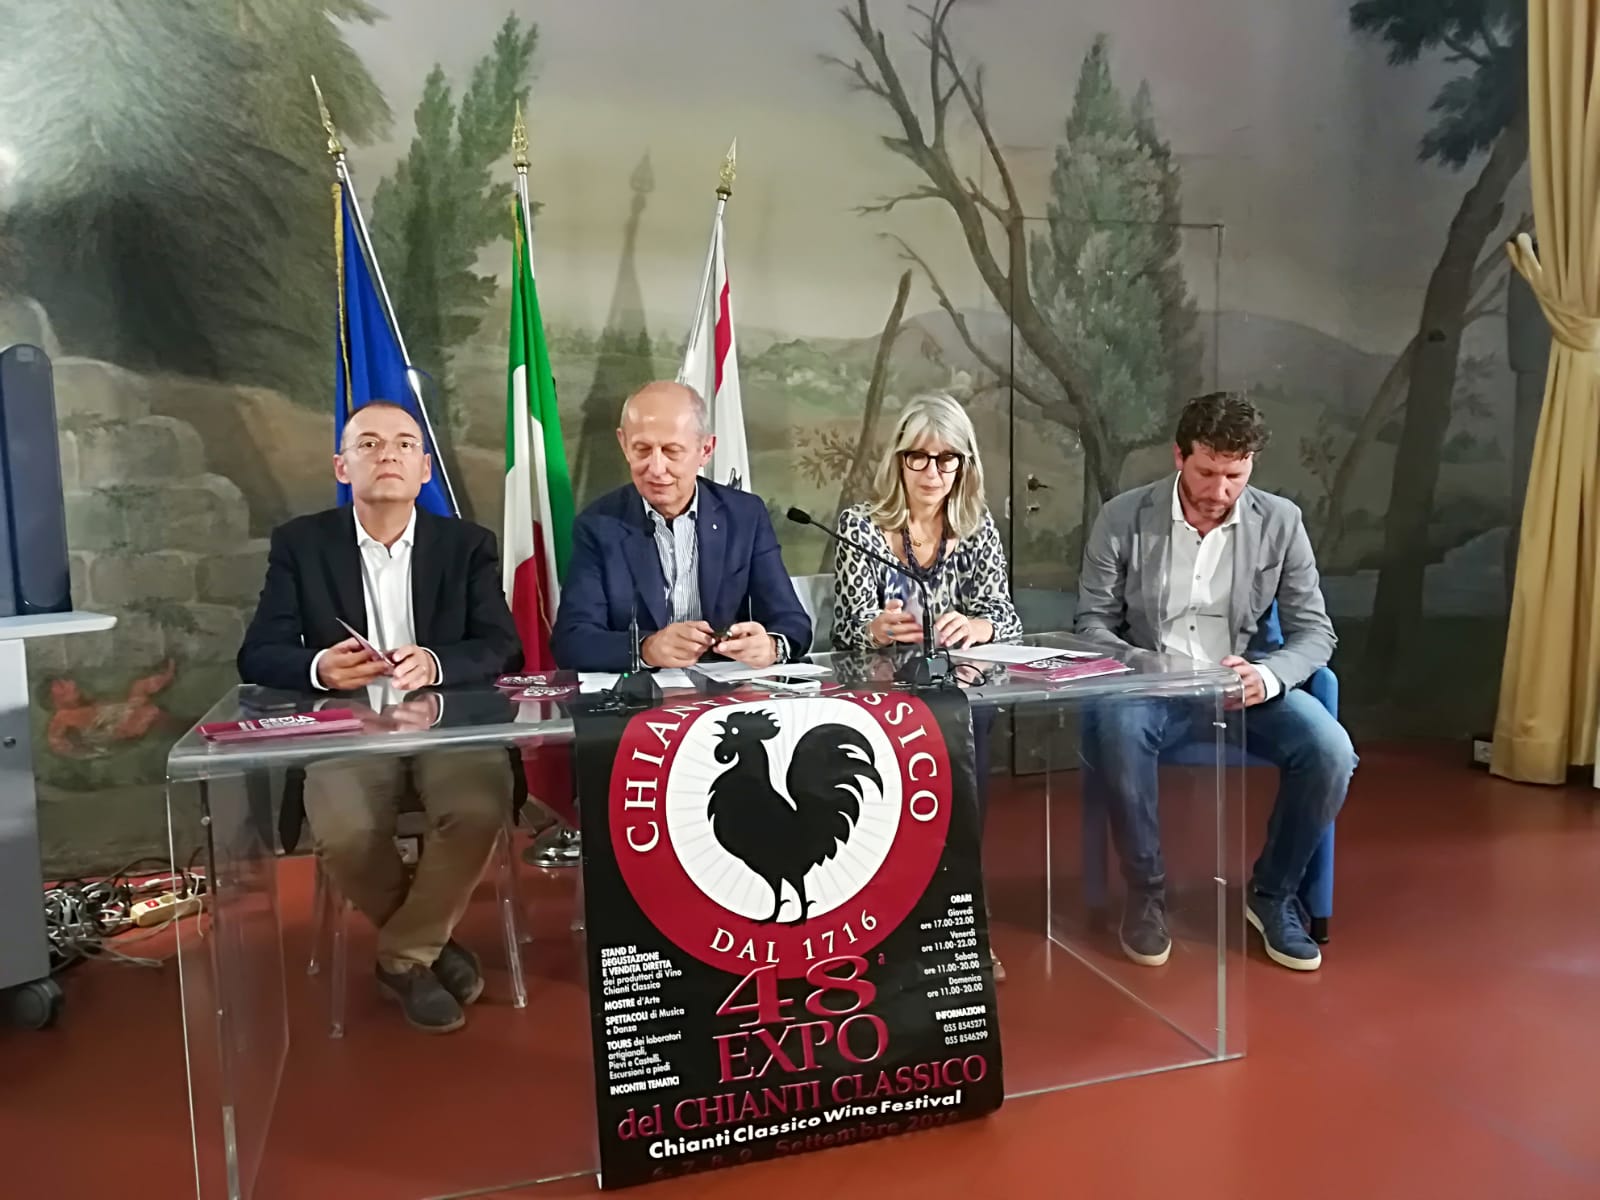 La conferenza stampa di presentazione  dell’Expo Chianti Classico (fonte foto comunicato)